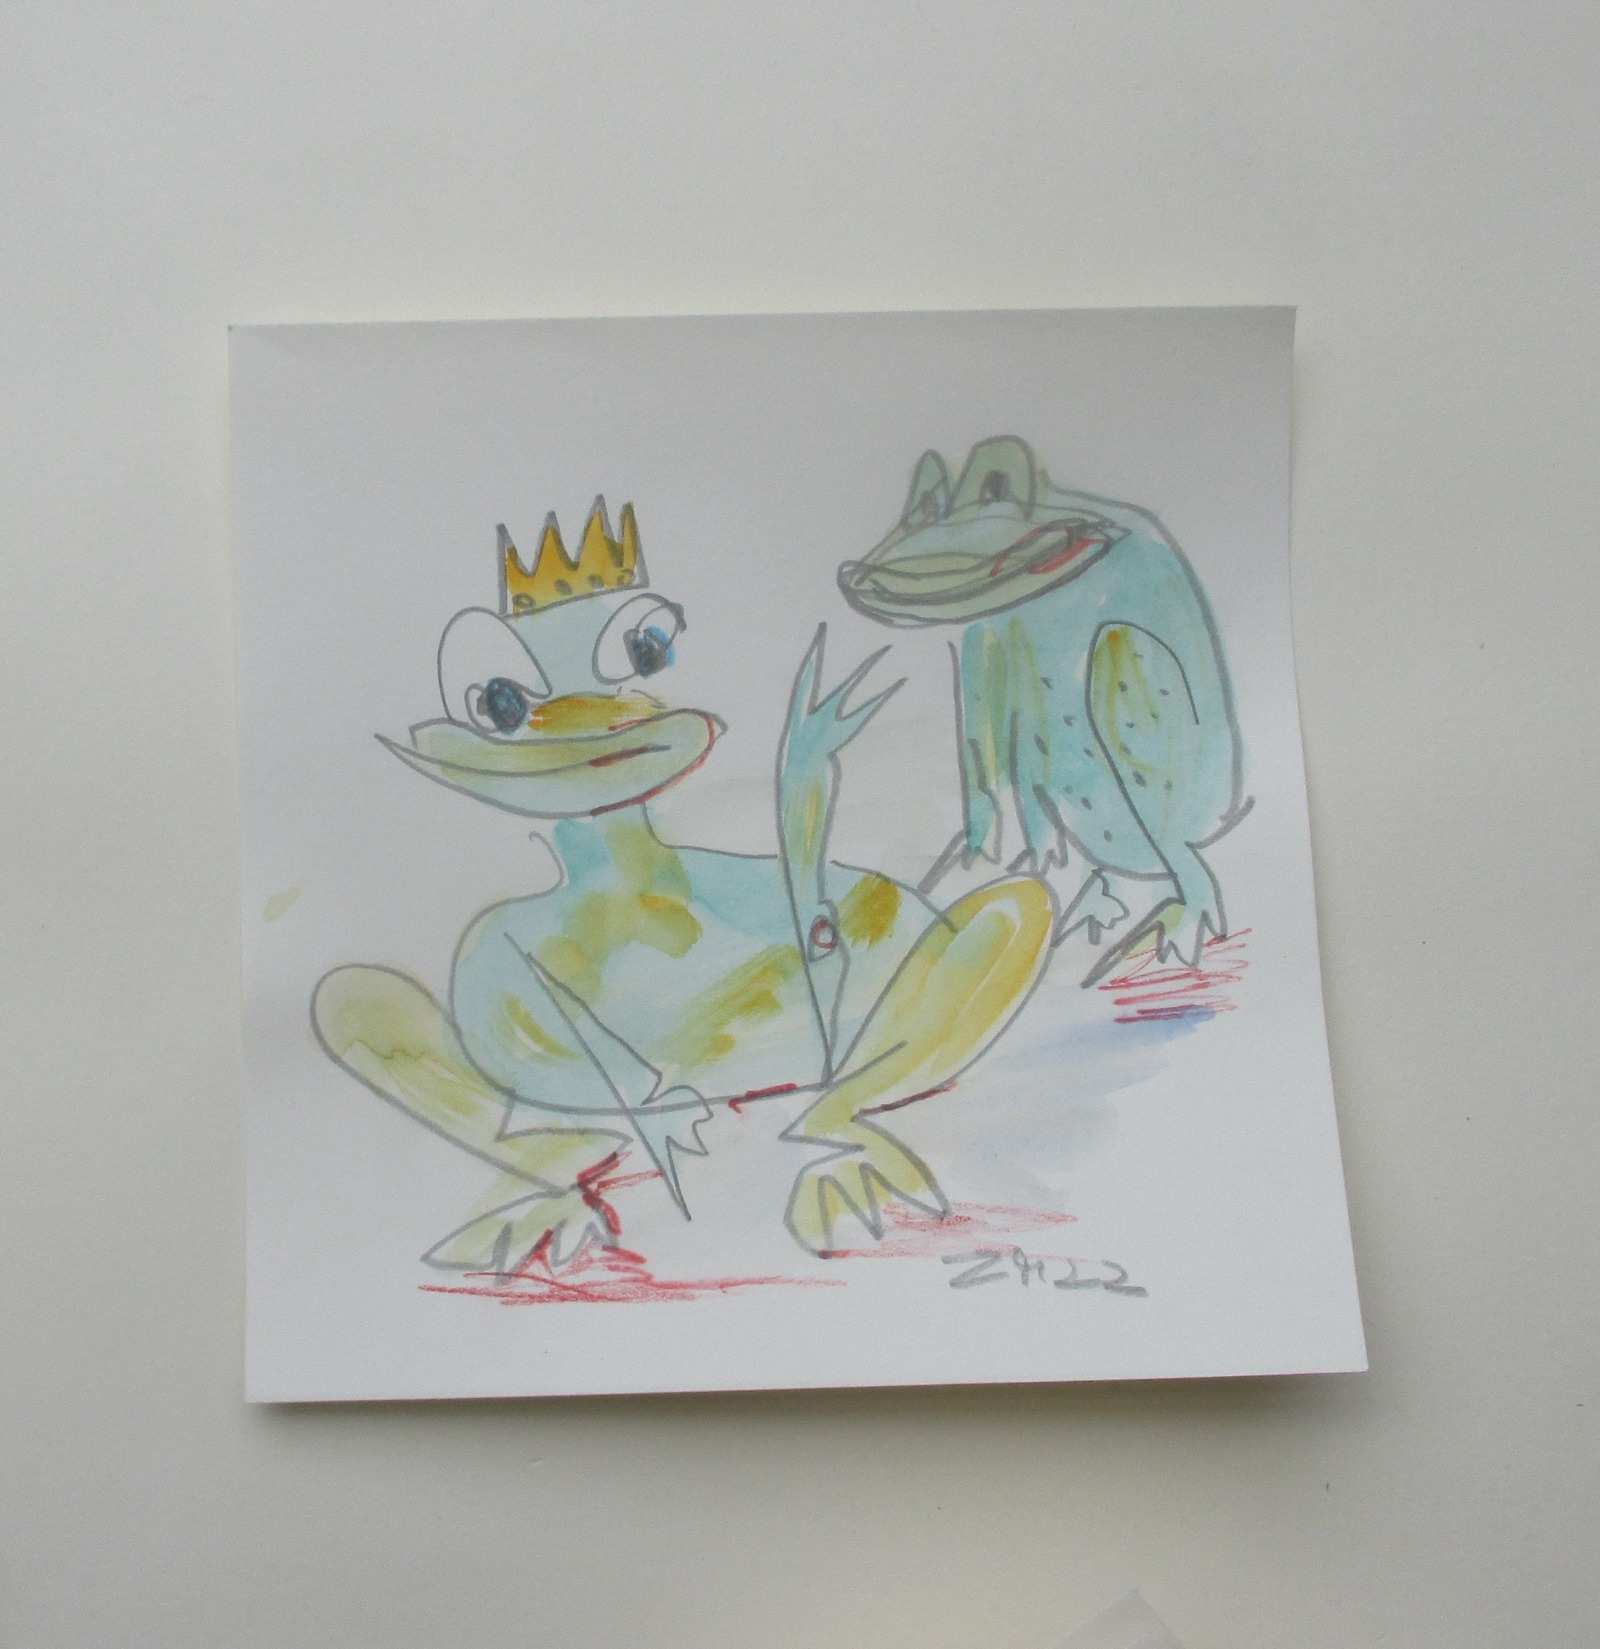 4 Frösche Froschkönige expressive Original Zeichnung auf Papier Tusche 4x20x20 cm 2